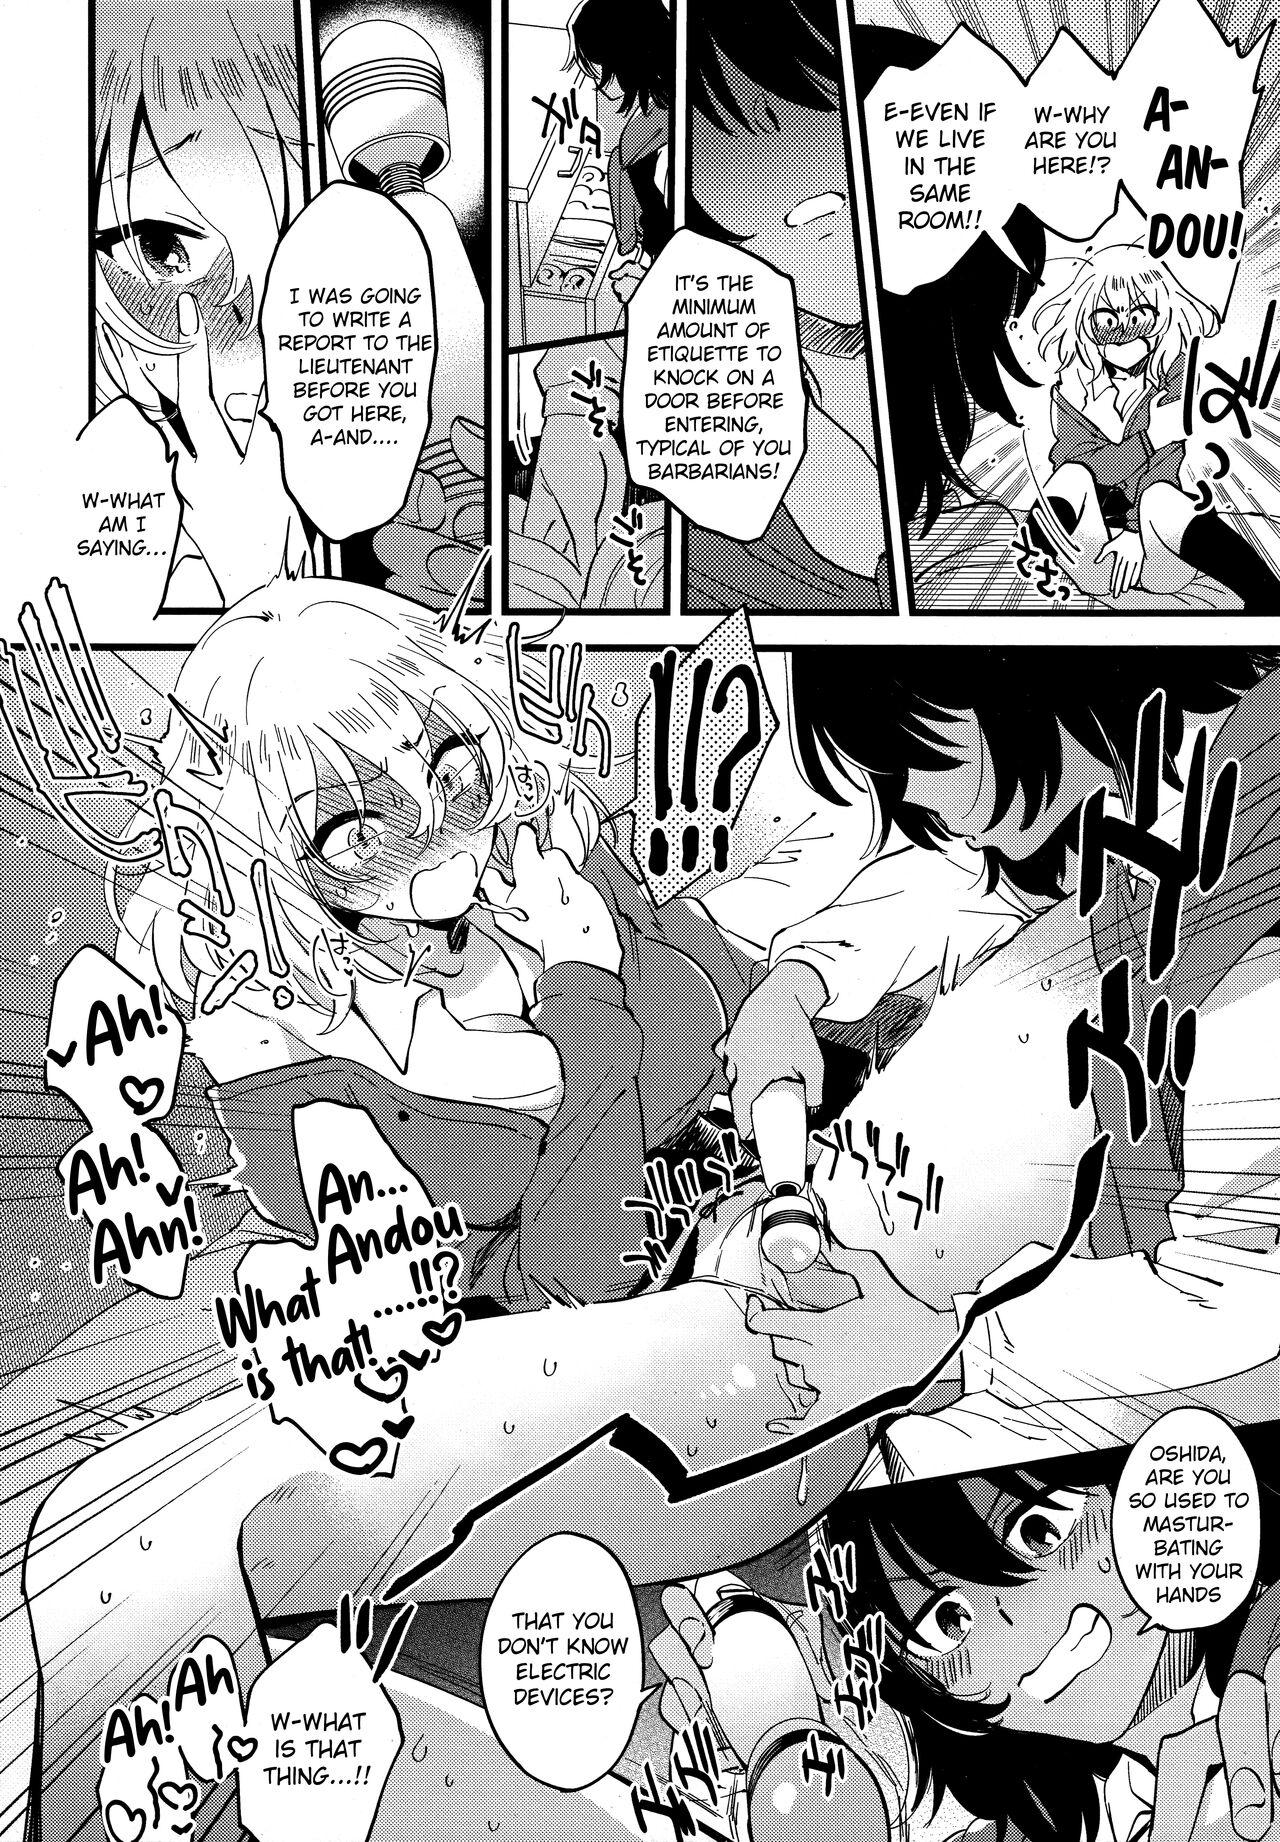 Longhair AnOshi, Nakayoku! - Girls und panzer Fetish - Page 9